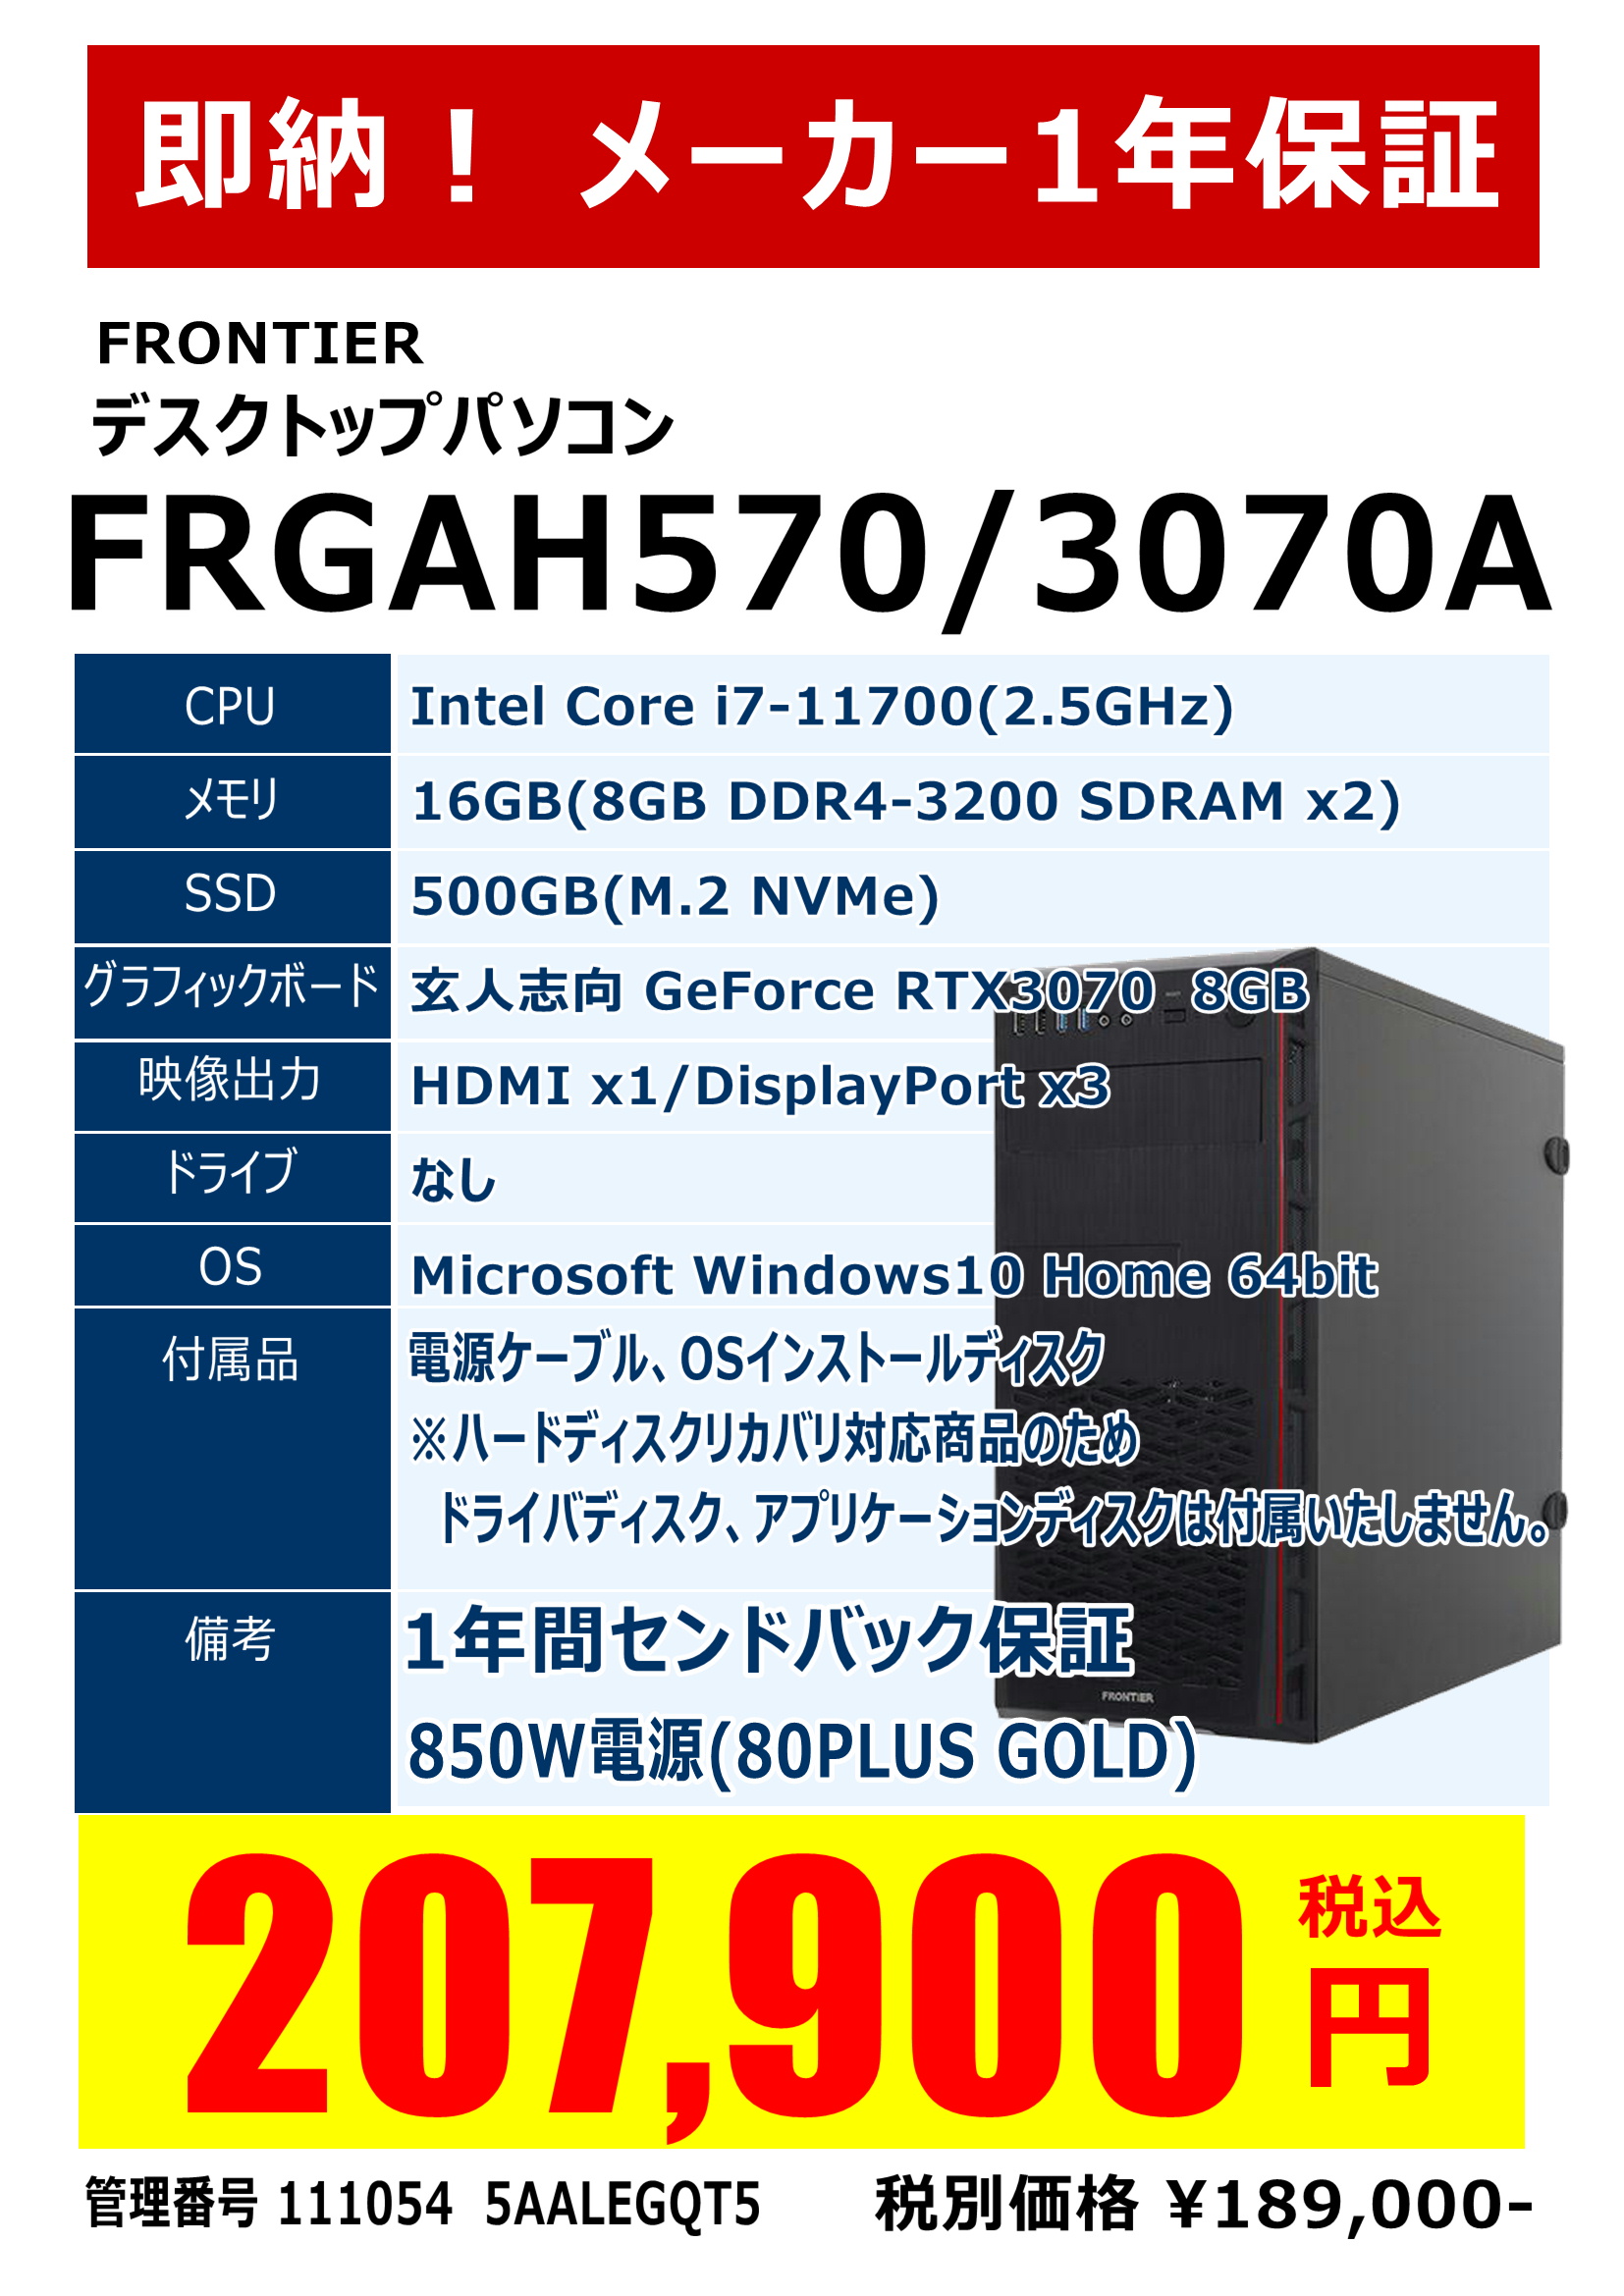 新品ゲーミングパソコン FRONTIER FRGAH570/3070A